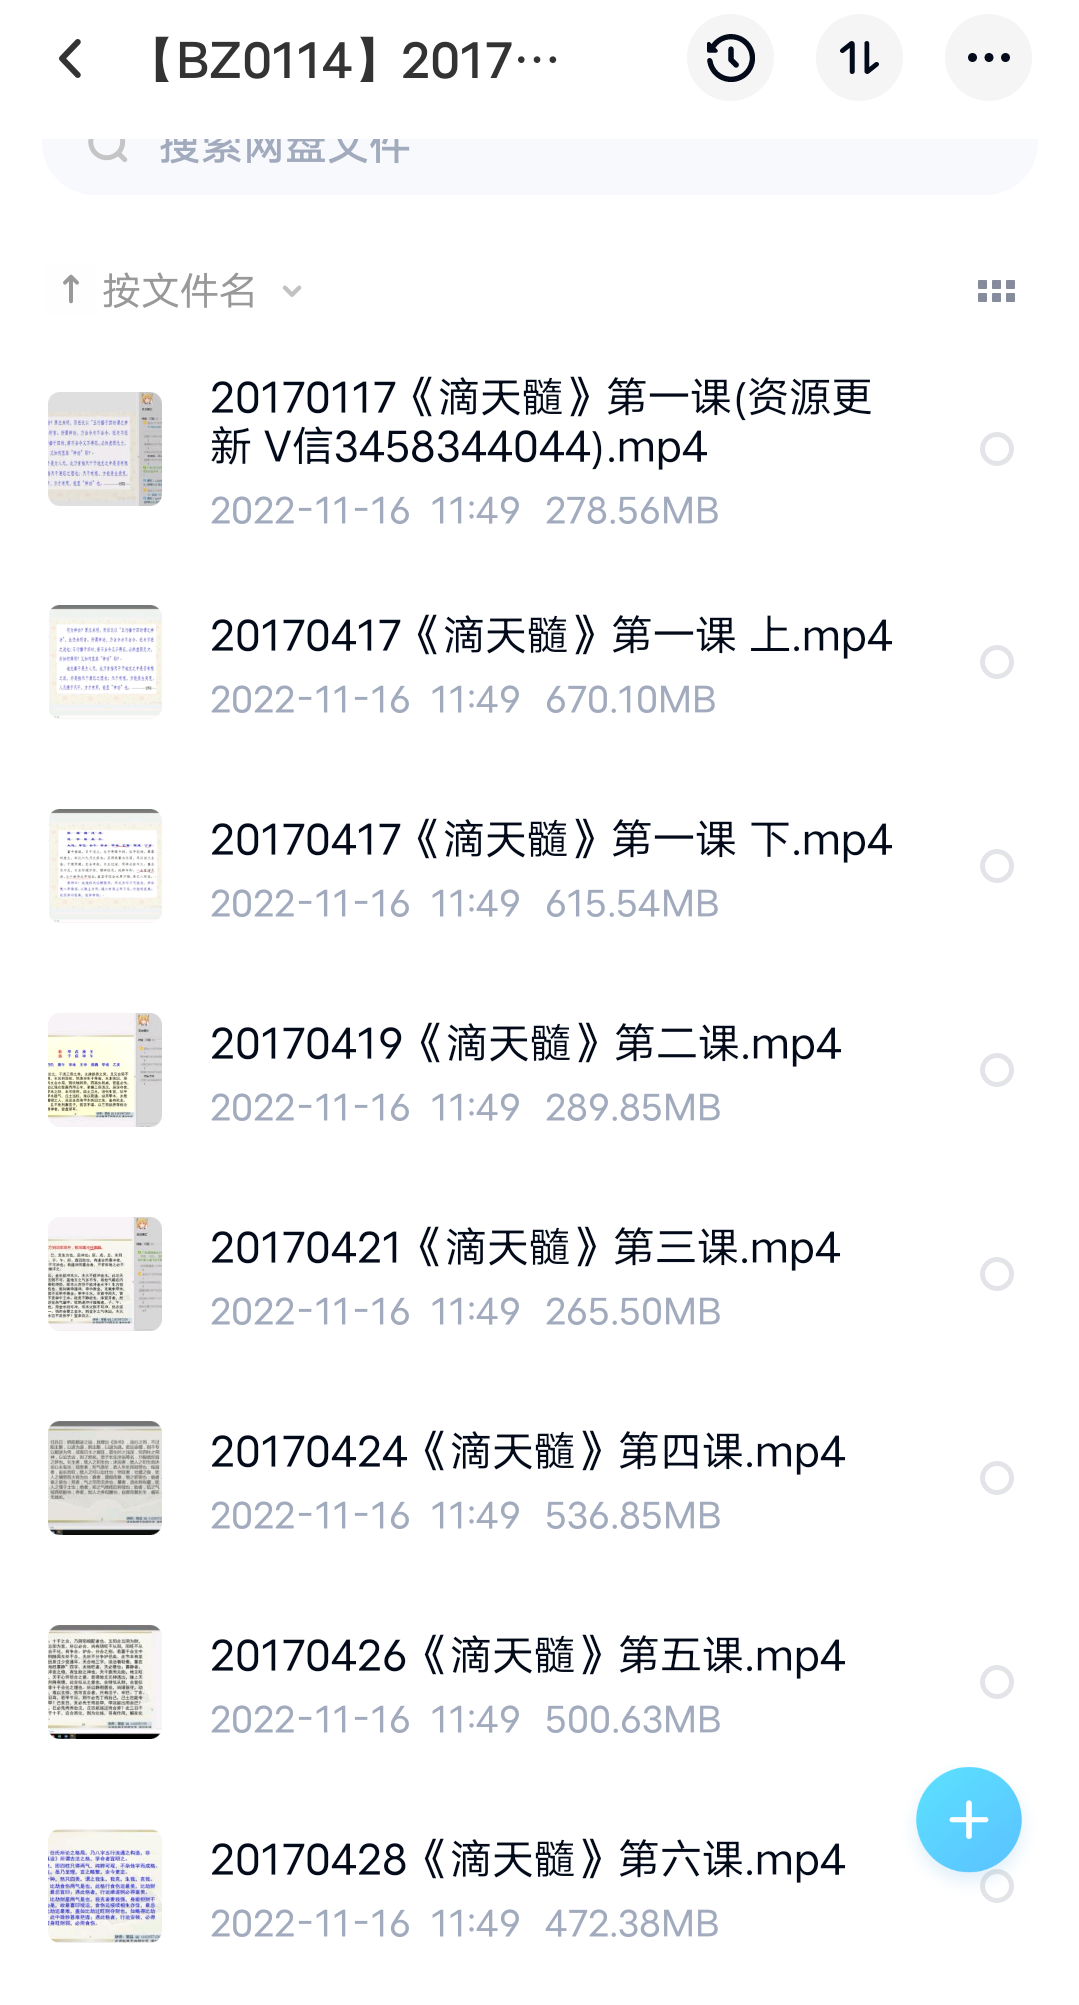 2017漫画命理滴天髓第二期SP(30集 13G） 百度网盘下载